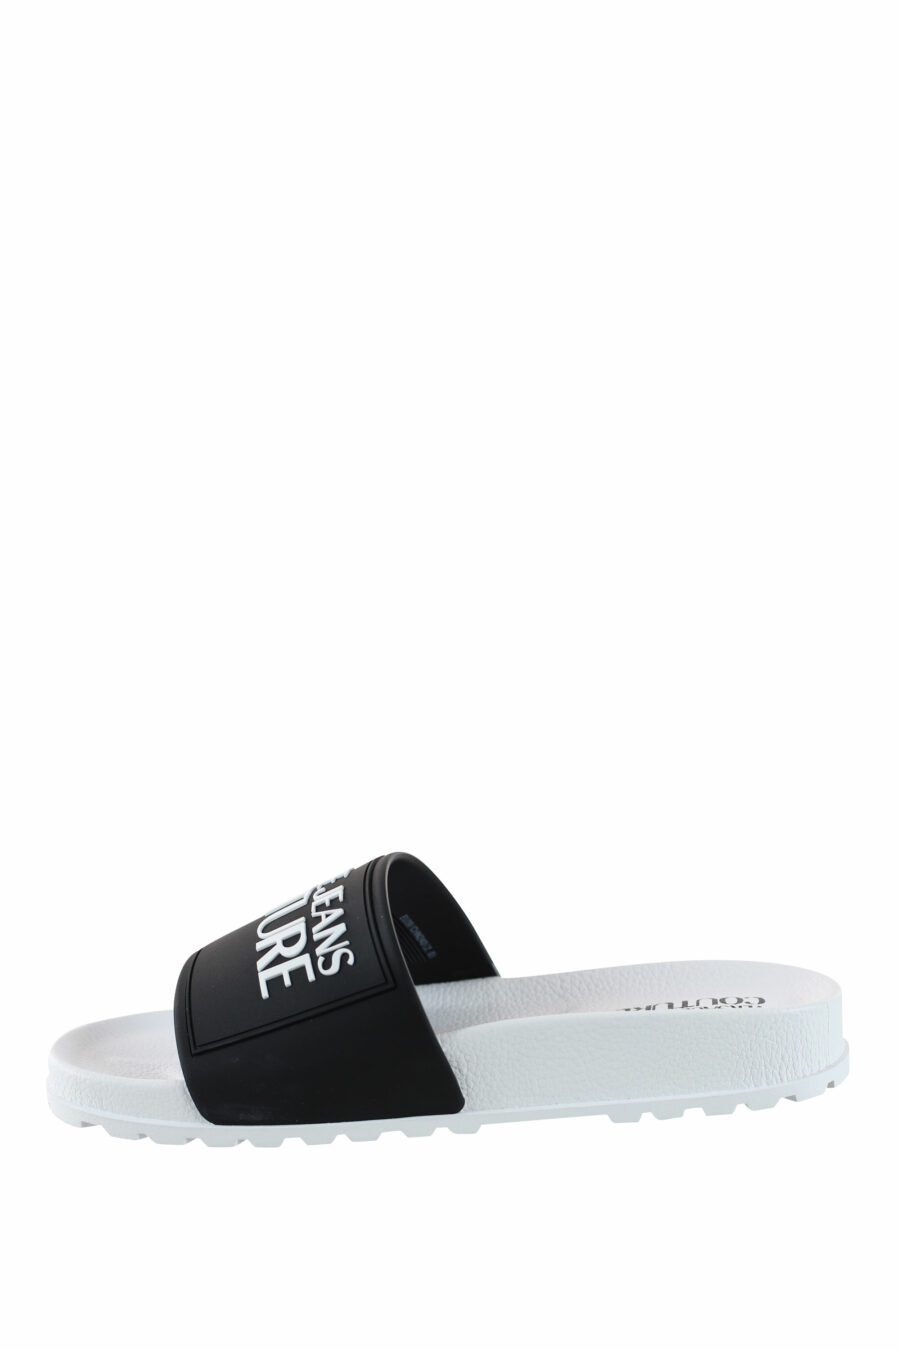 Zweifarbige schwarz-weiße Flip Flops mit weißem Maxilogo - IMG 4423